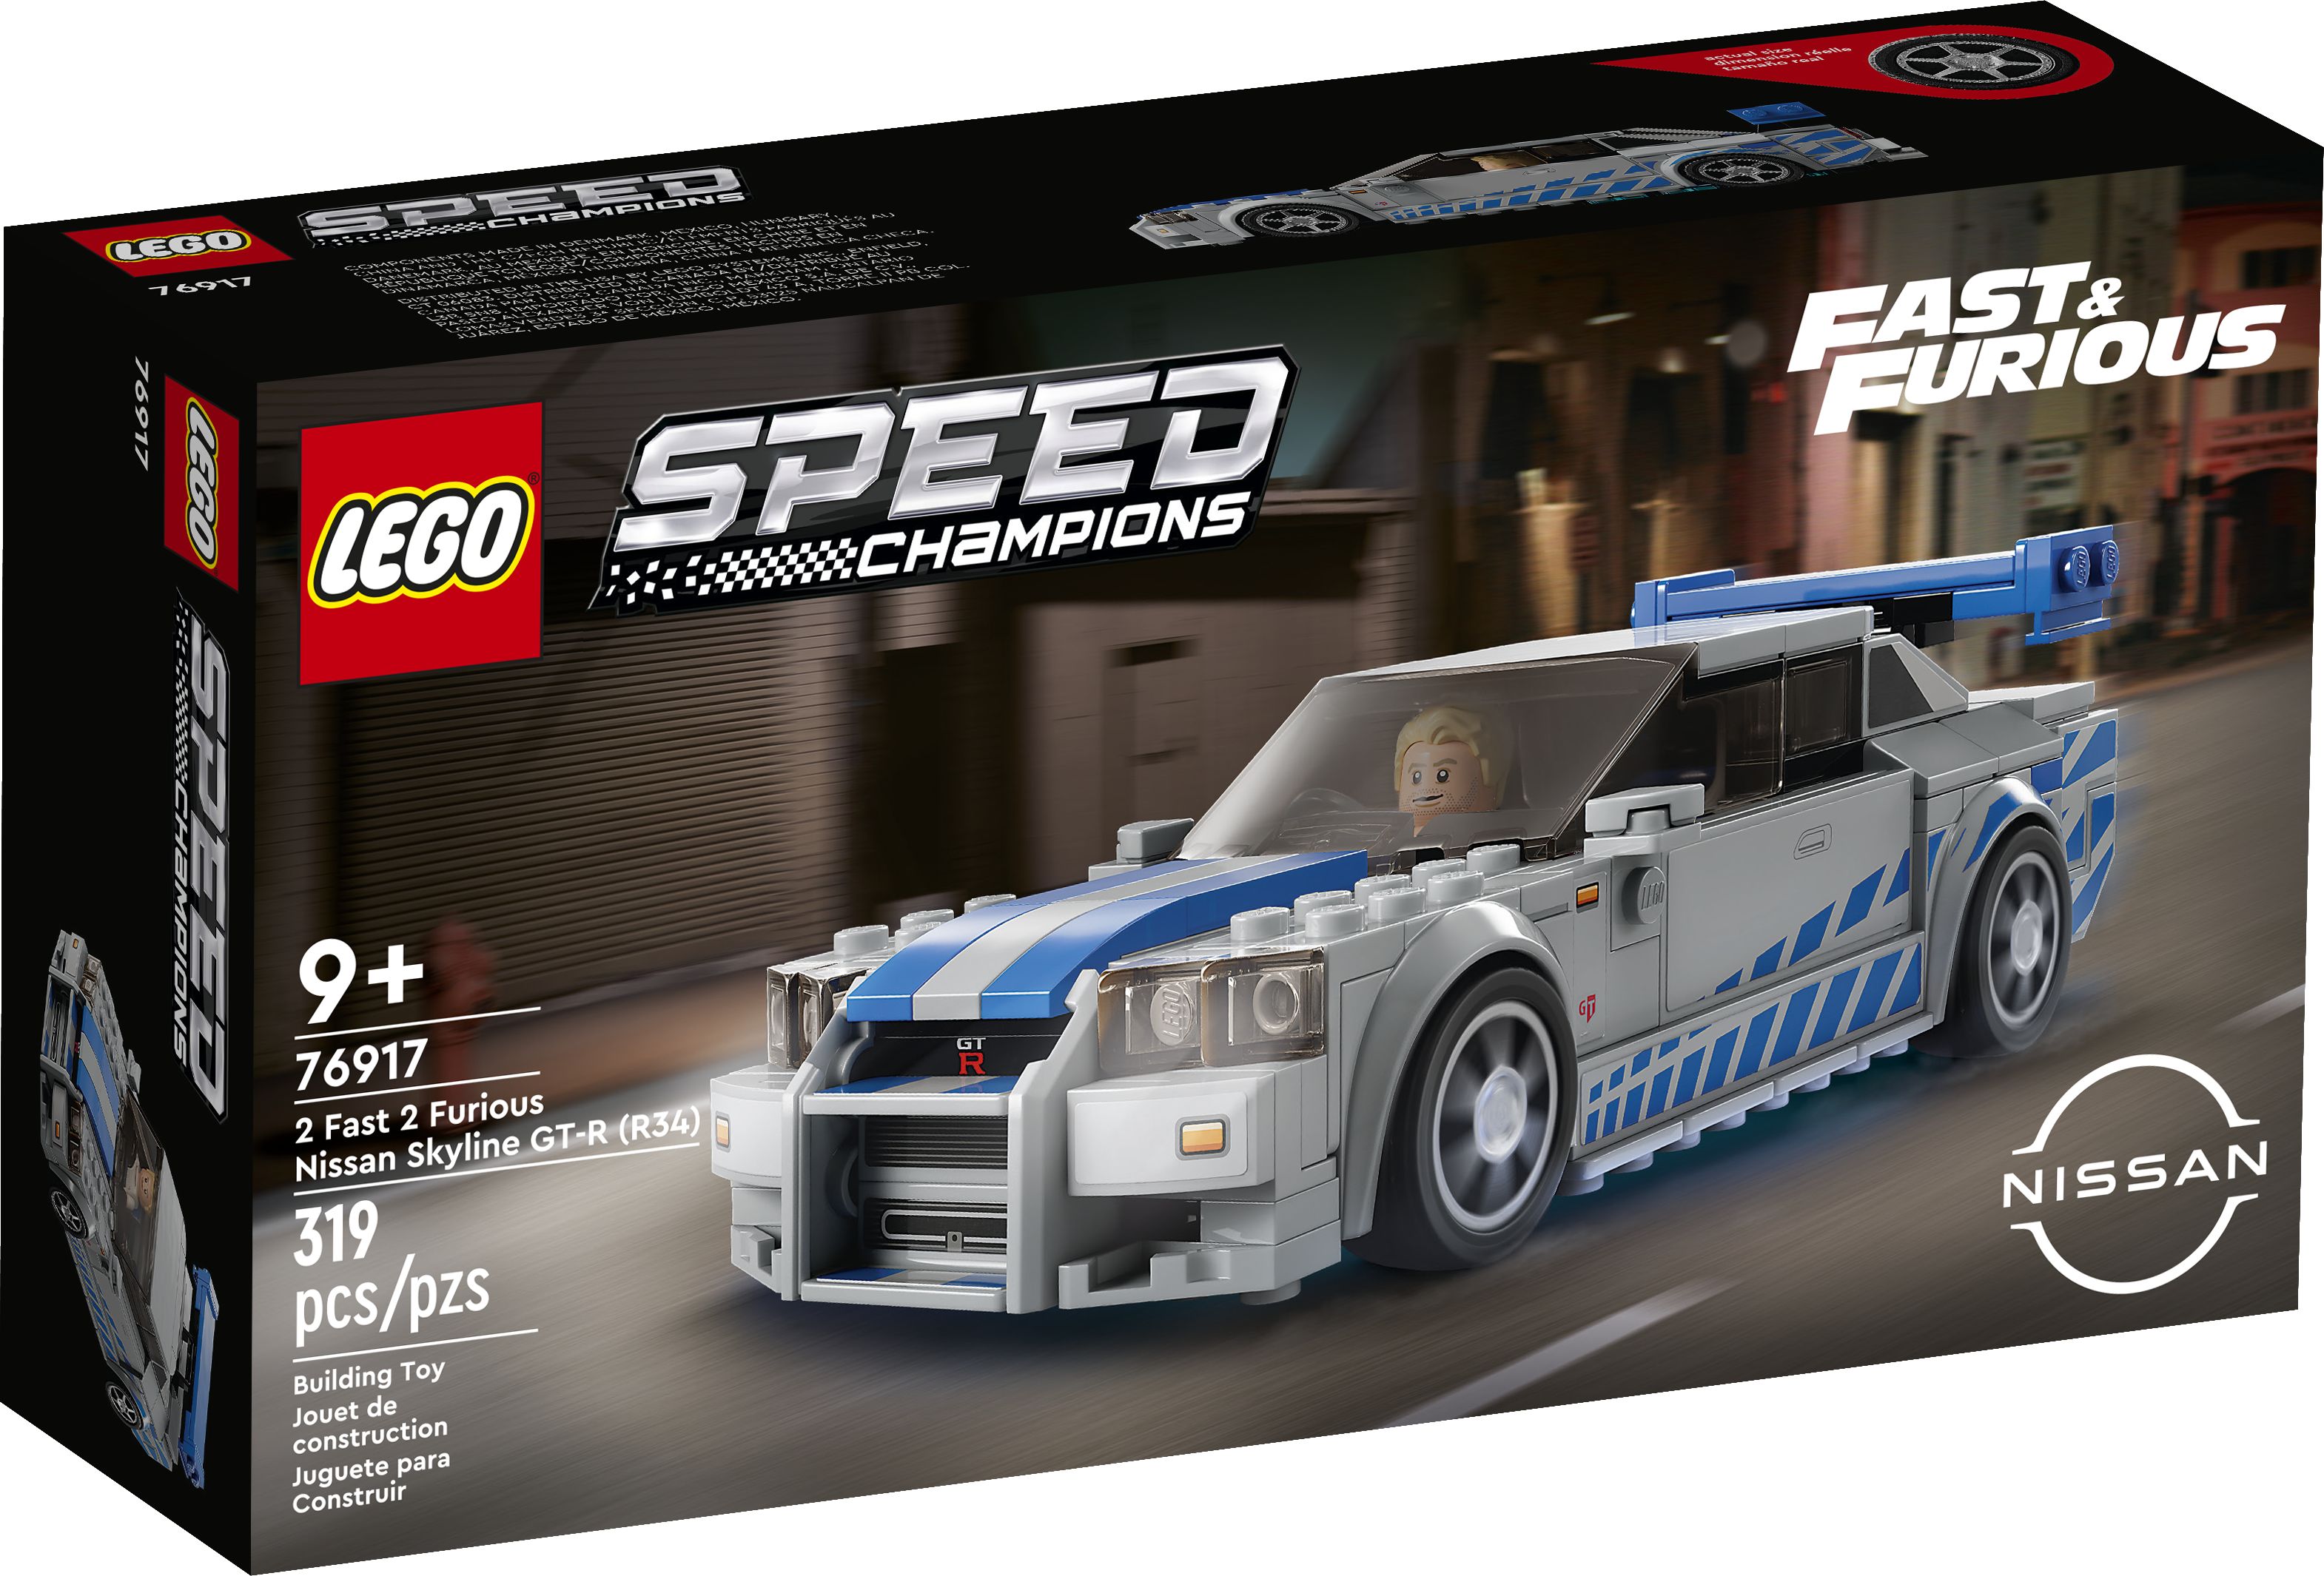 LEGO Speed Champions 76917 2 Fast 2 Furious – Nissan Skyline GT-R (R34) LEGO_76917_Box1_v39.jpg